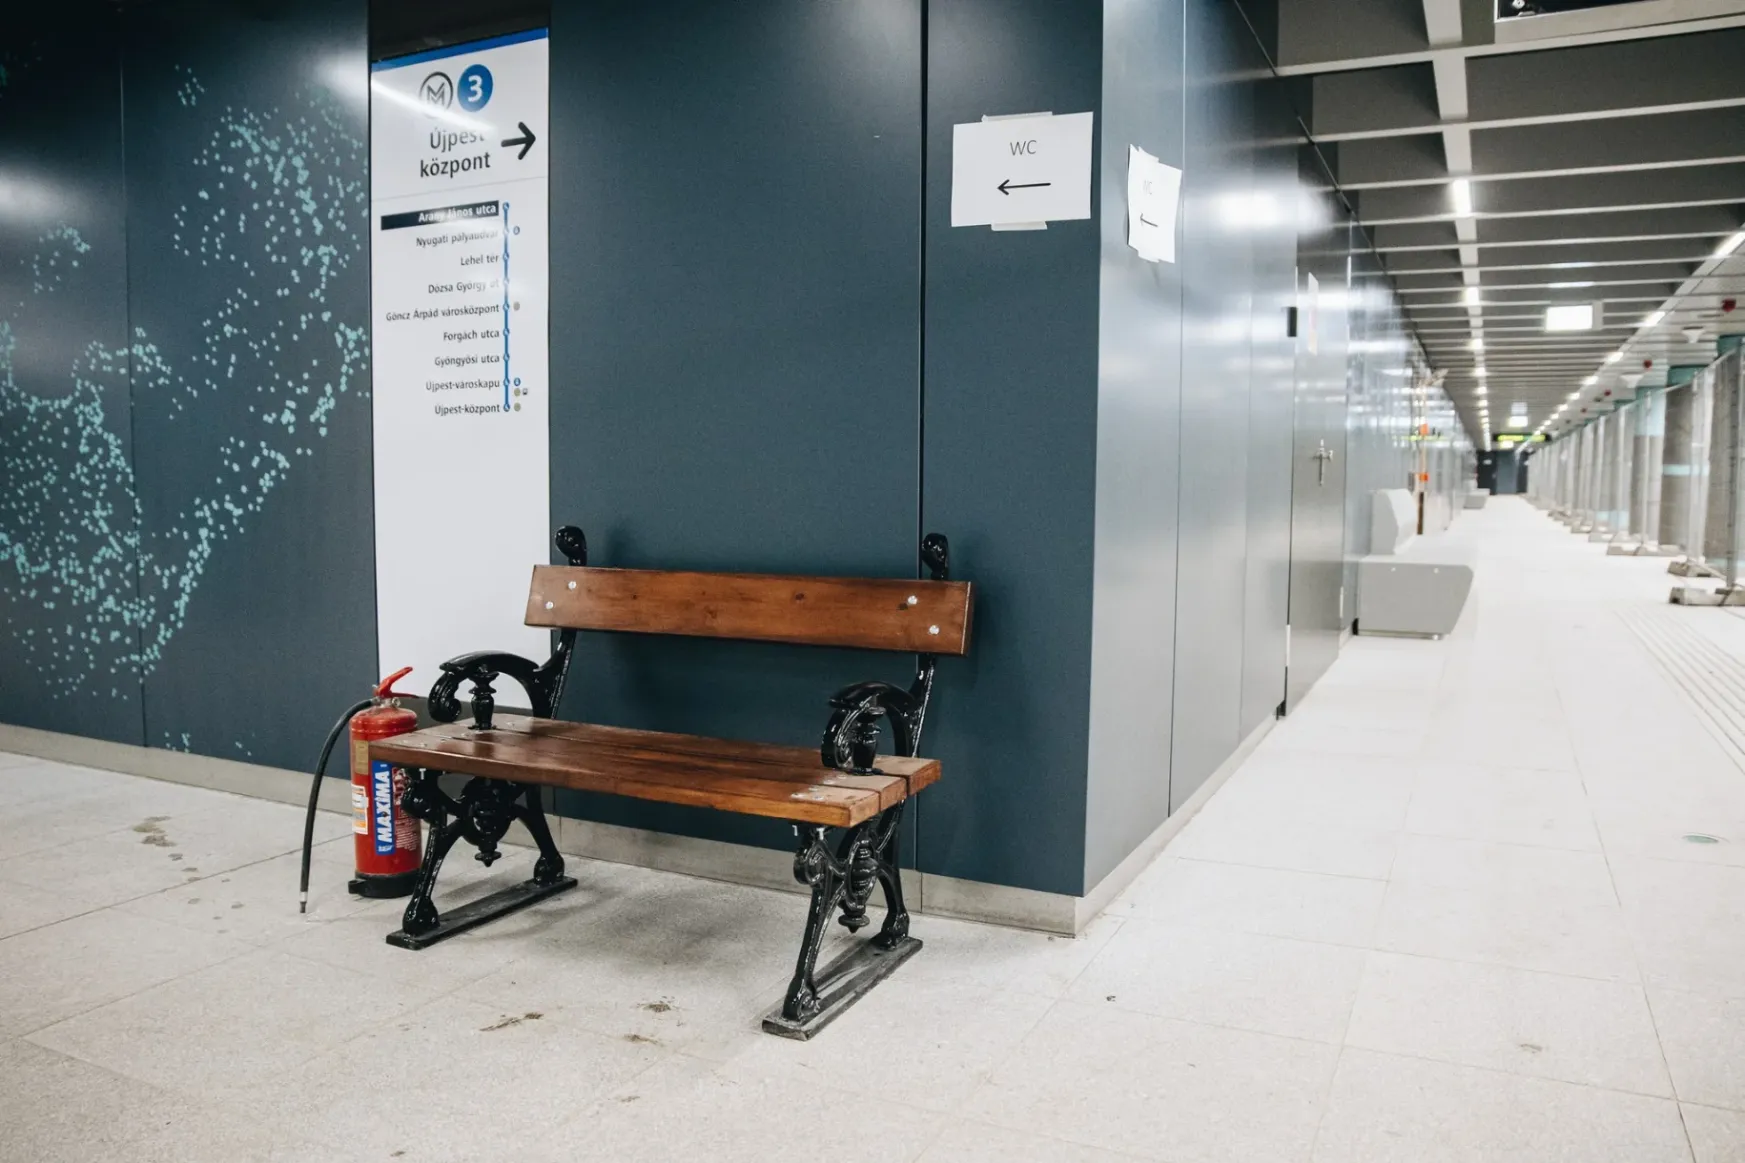 Visszakerült eredeti helyére Kányádi Sándor padja a felújított Arany János utcai metrómegállóban